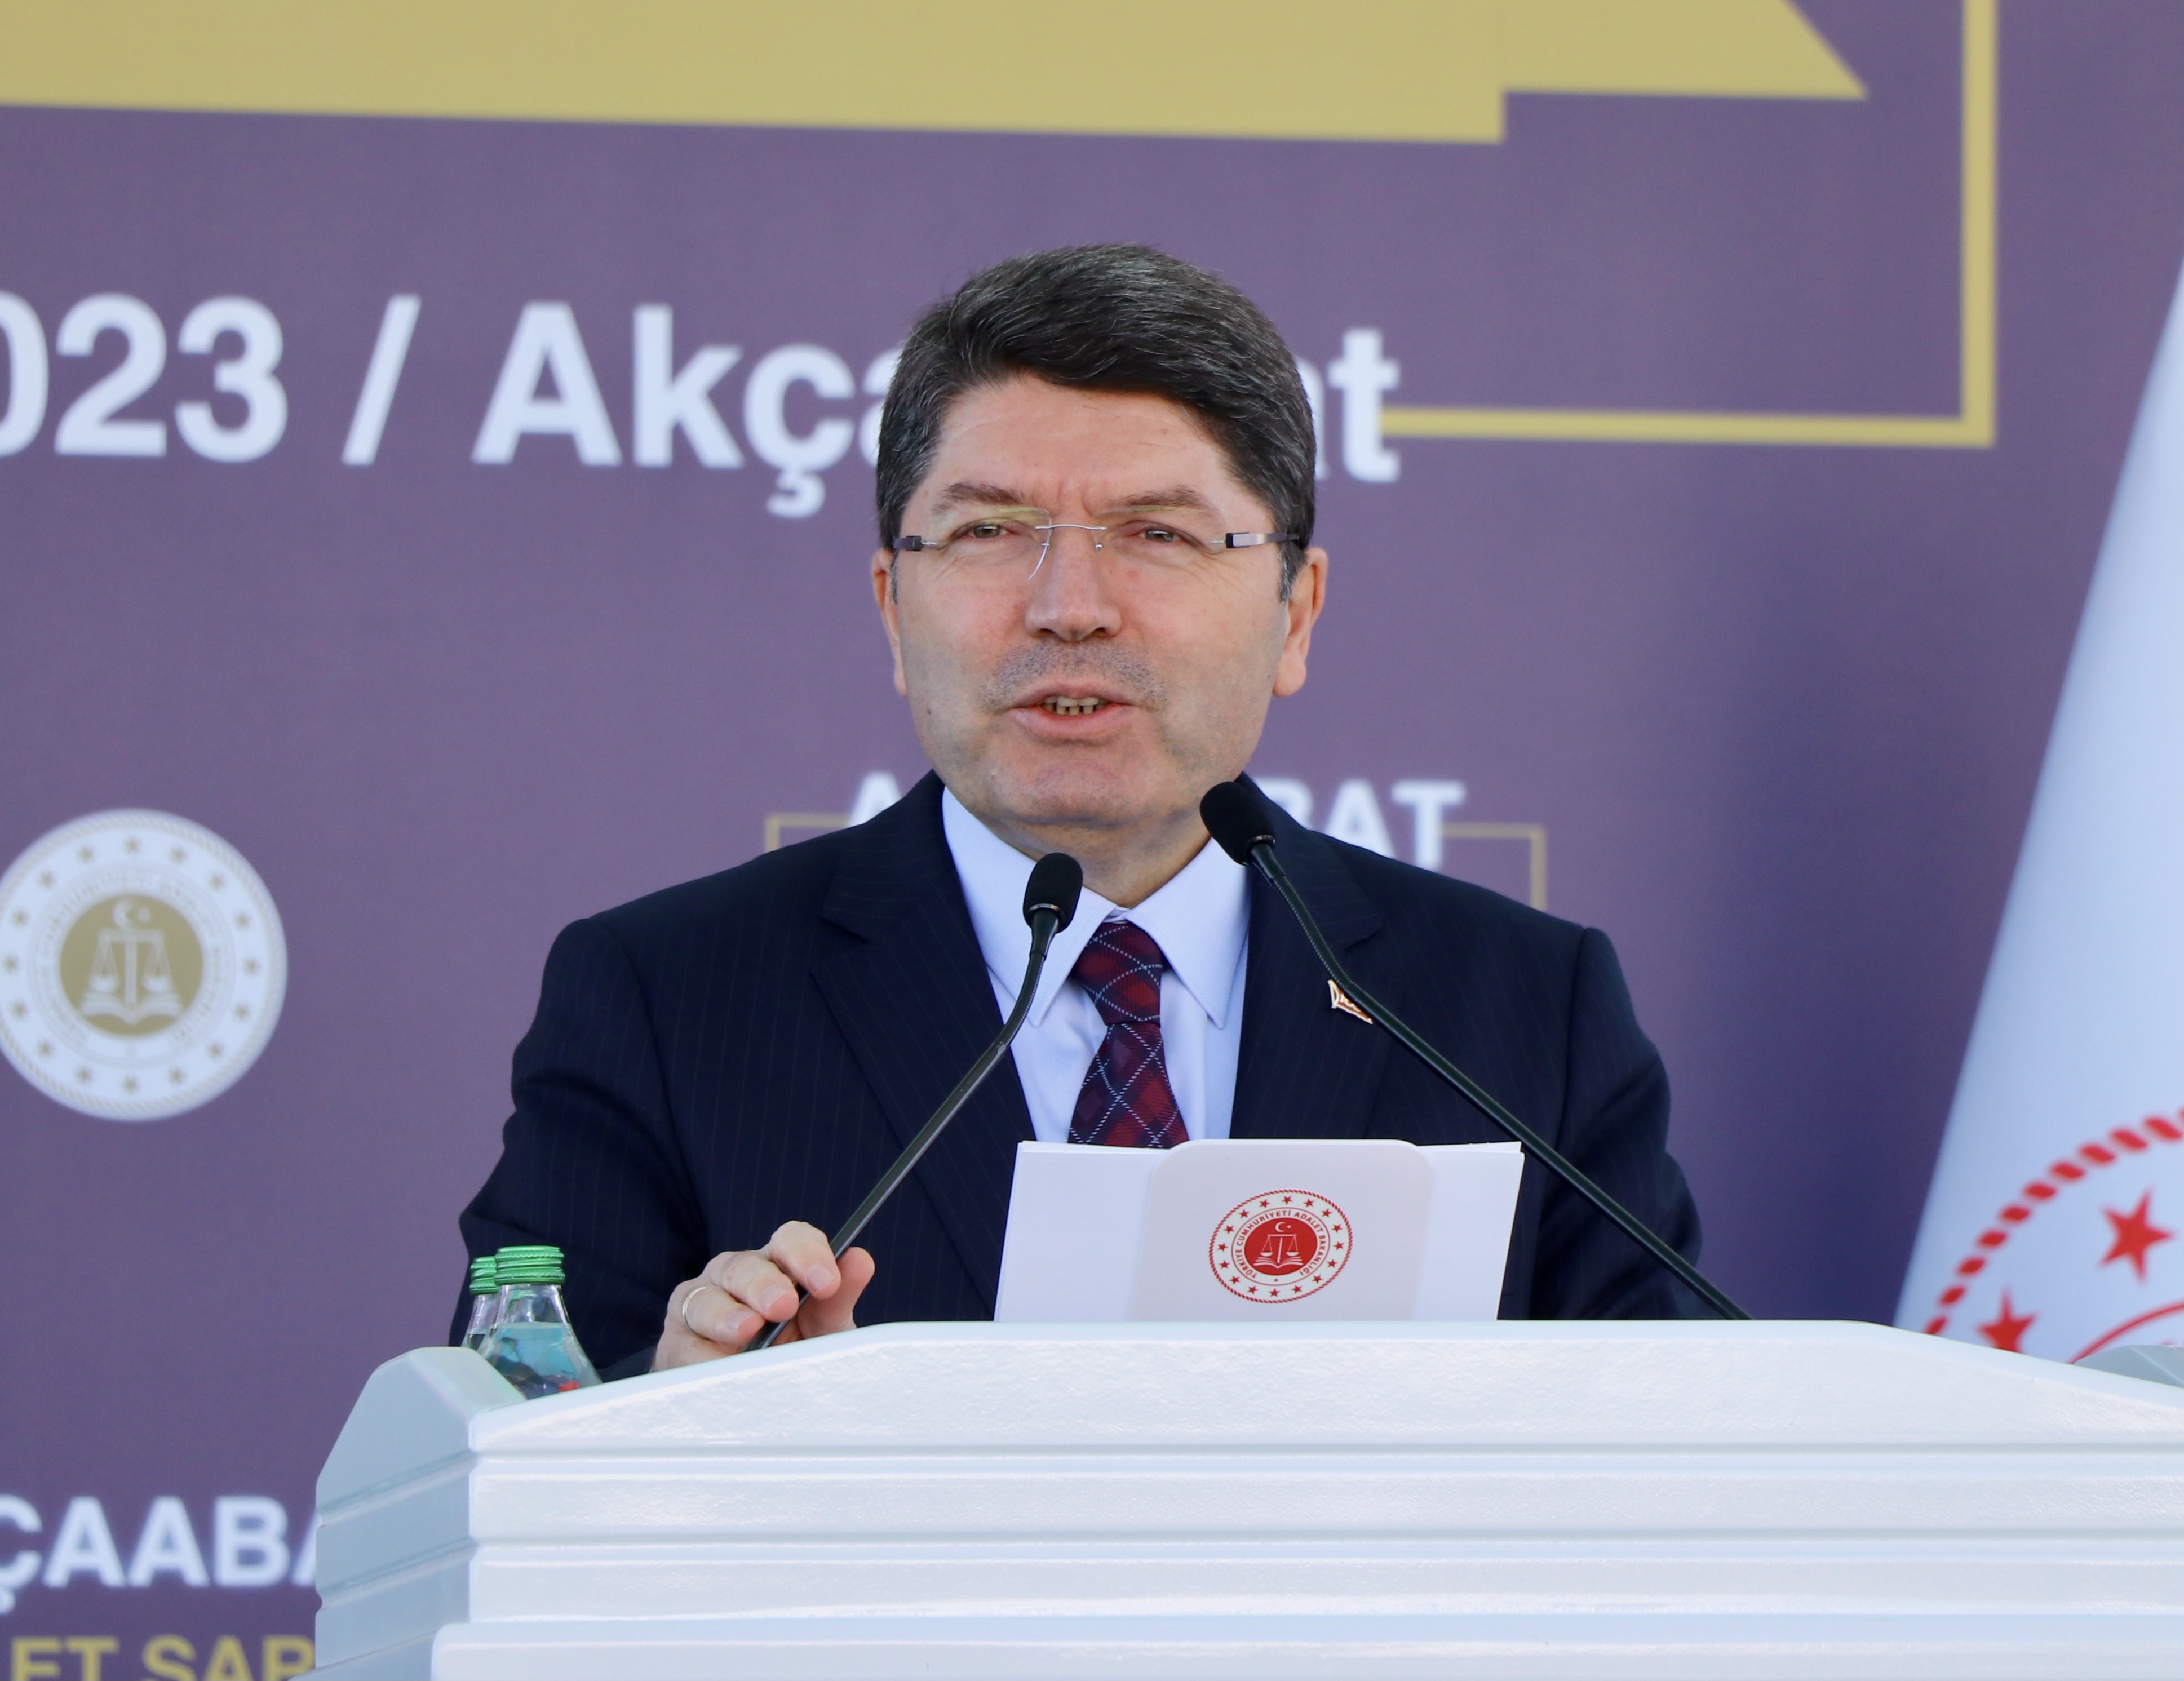 Adalet Bakanı Tunç, Akçaabat Adalet Sarayı’nın temel atma töreninde konuştu: